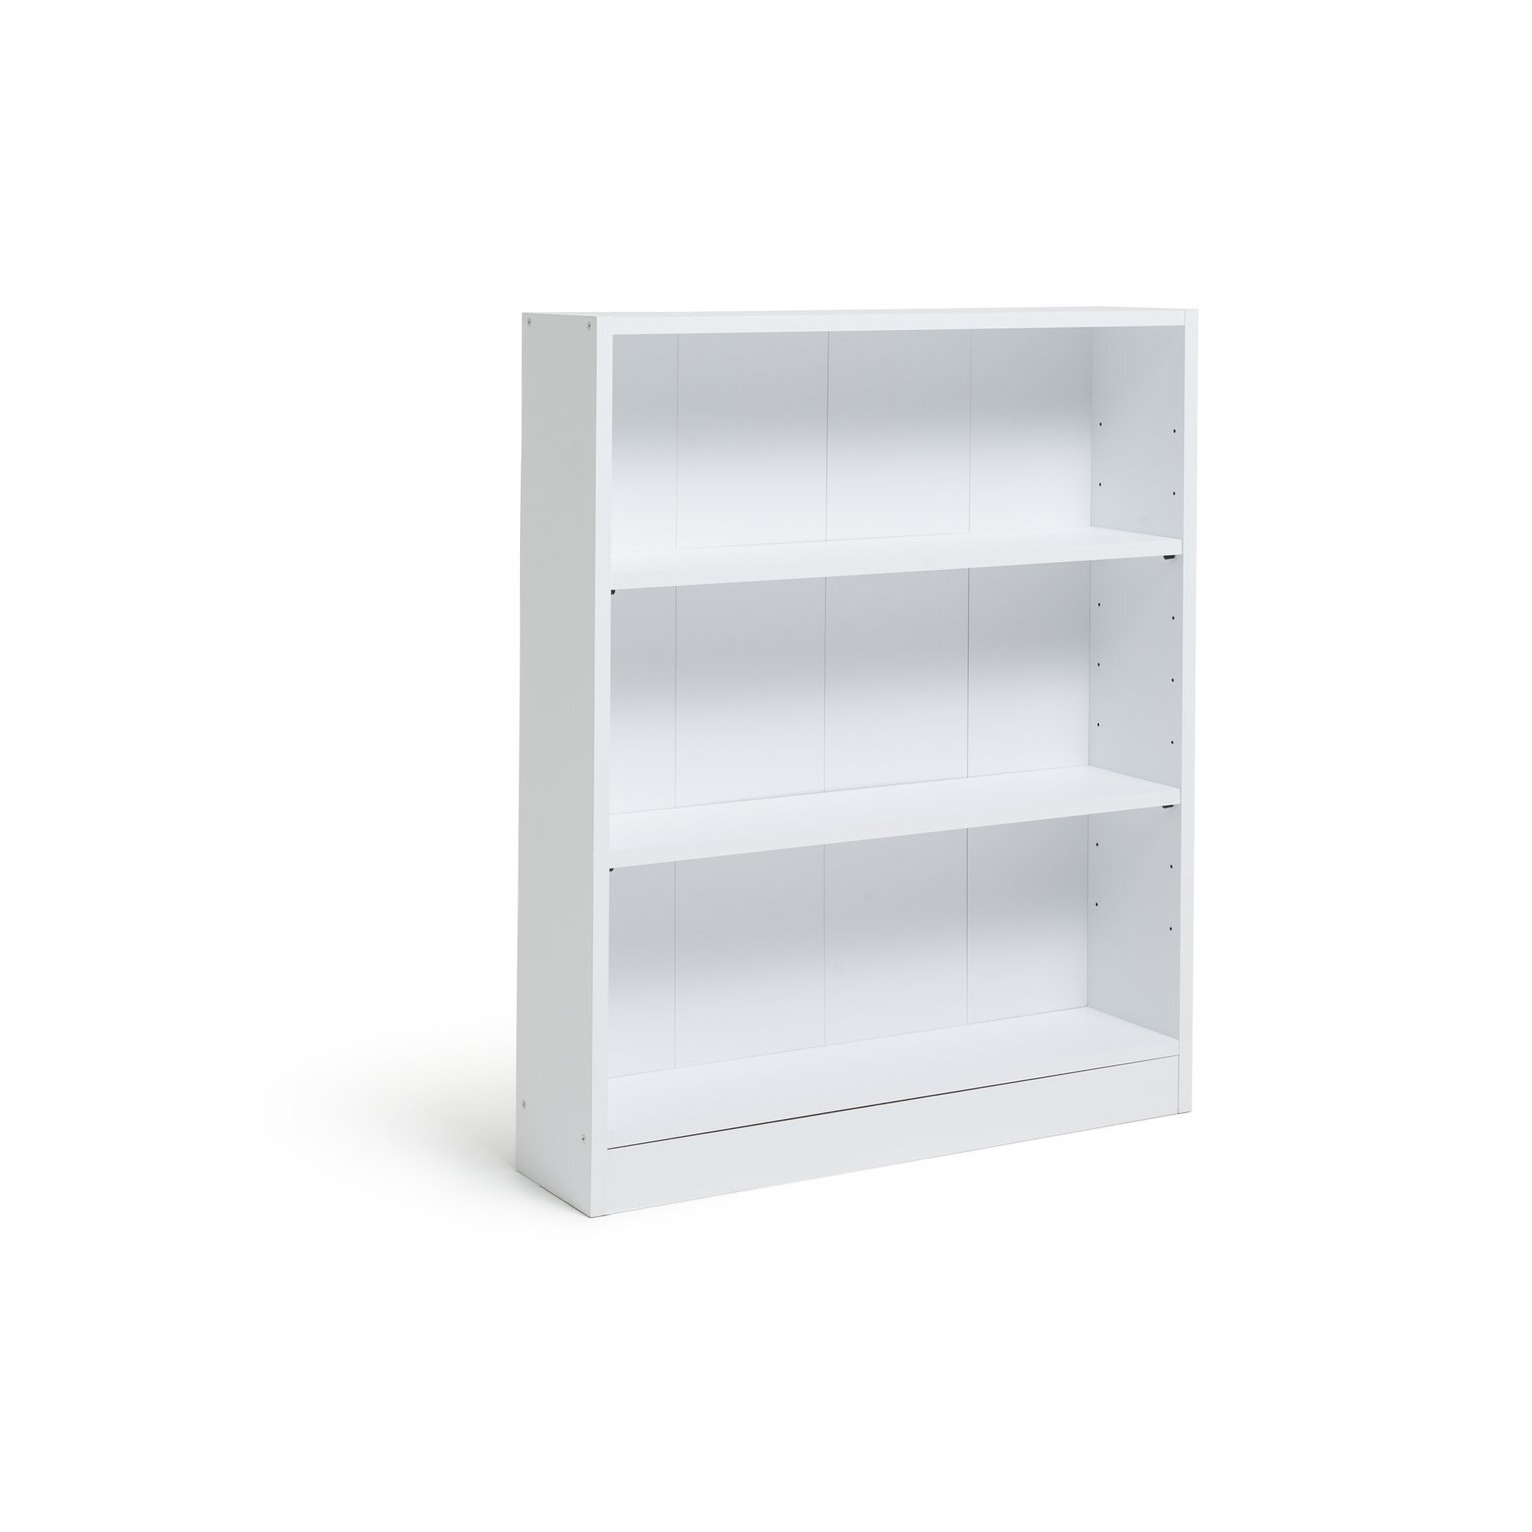 Habitat Short Bookcase - White - image 1